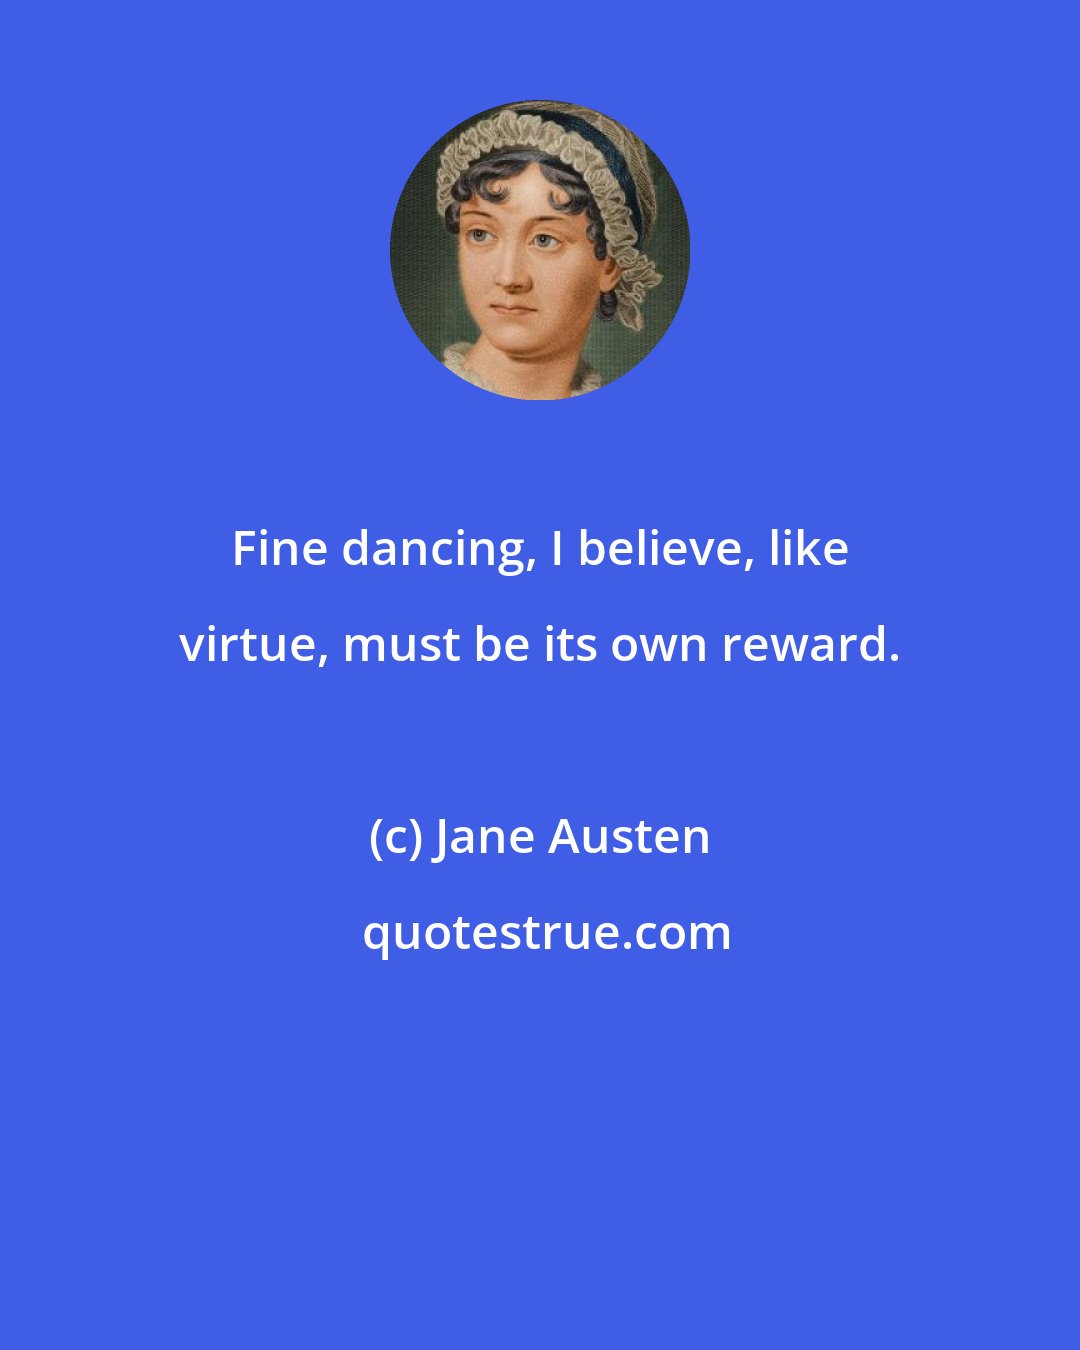 Jane Austen: Fine dancing, I believe, like virtue, must be its own reward.